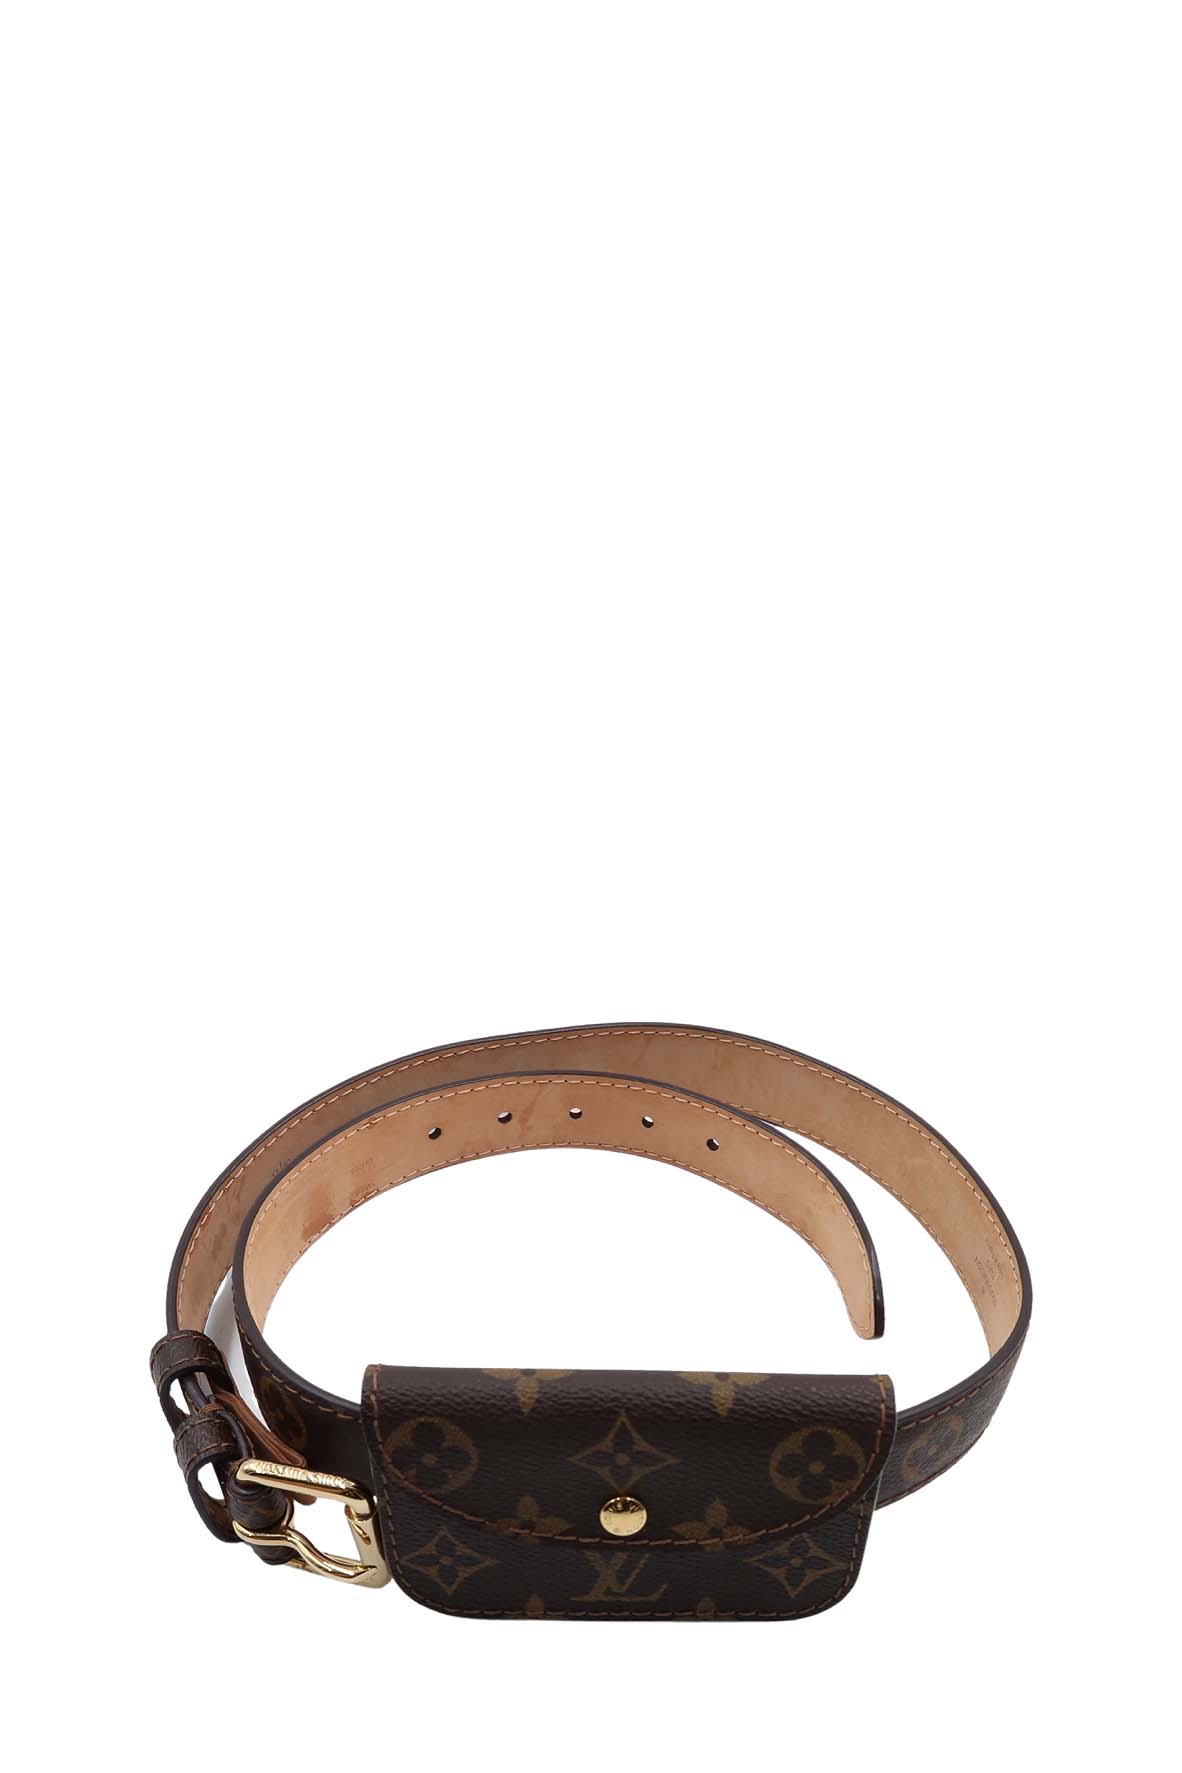 Louis Vuitton 2006 pre-owned Ceinture Pochette belt bag - ShopStyle